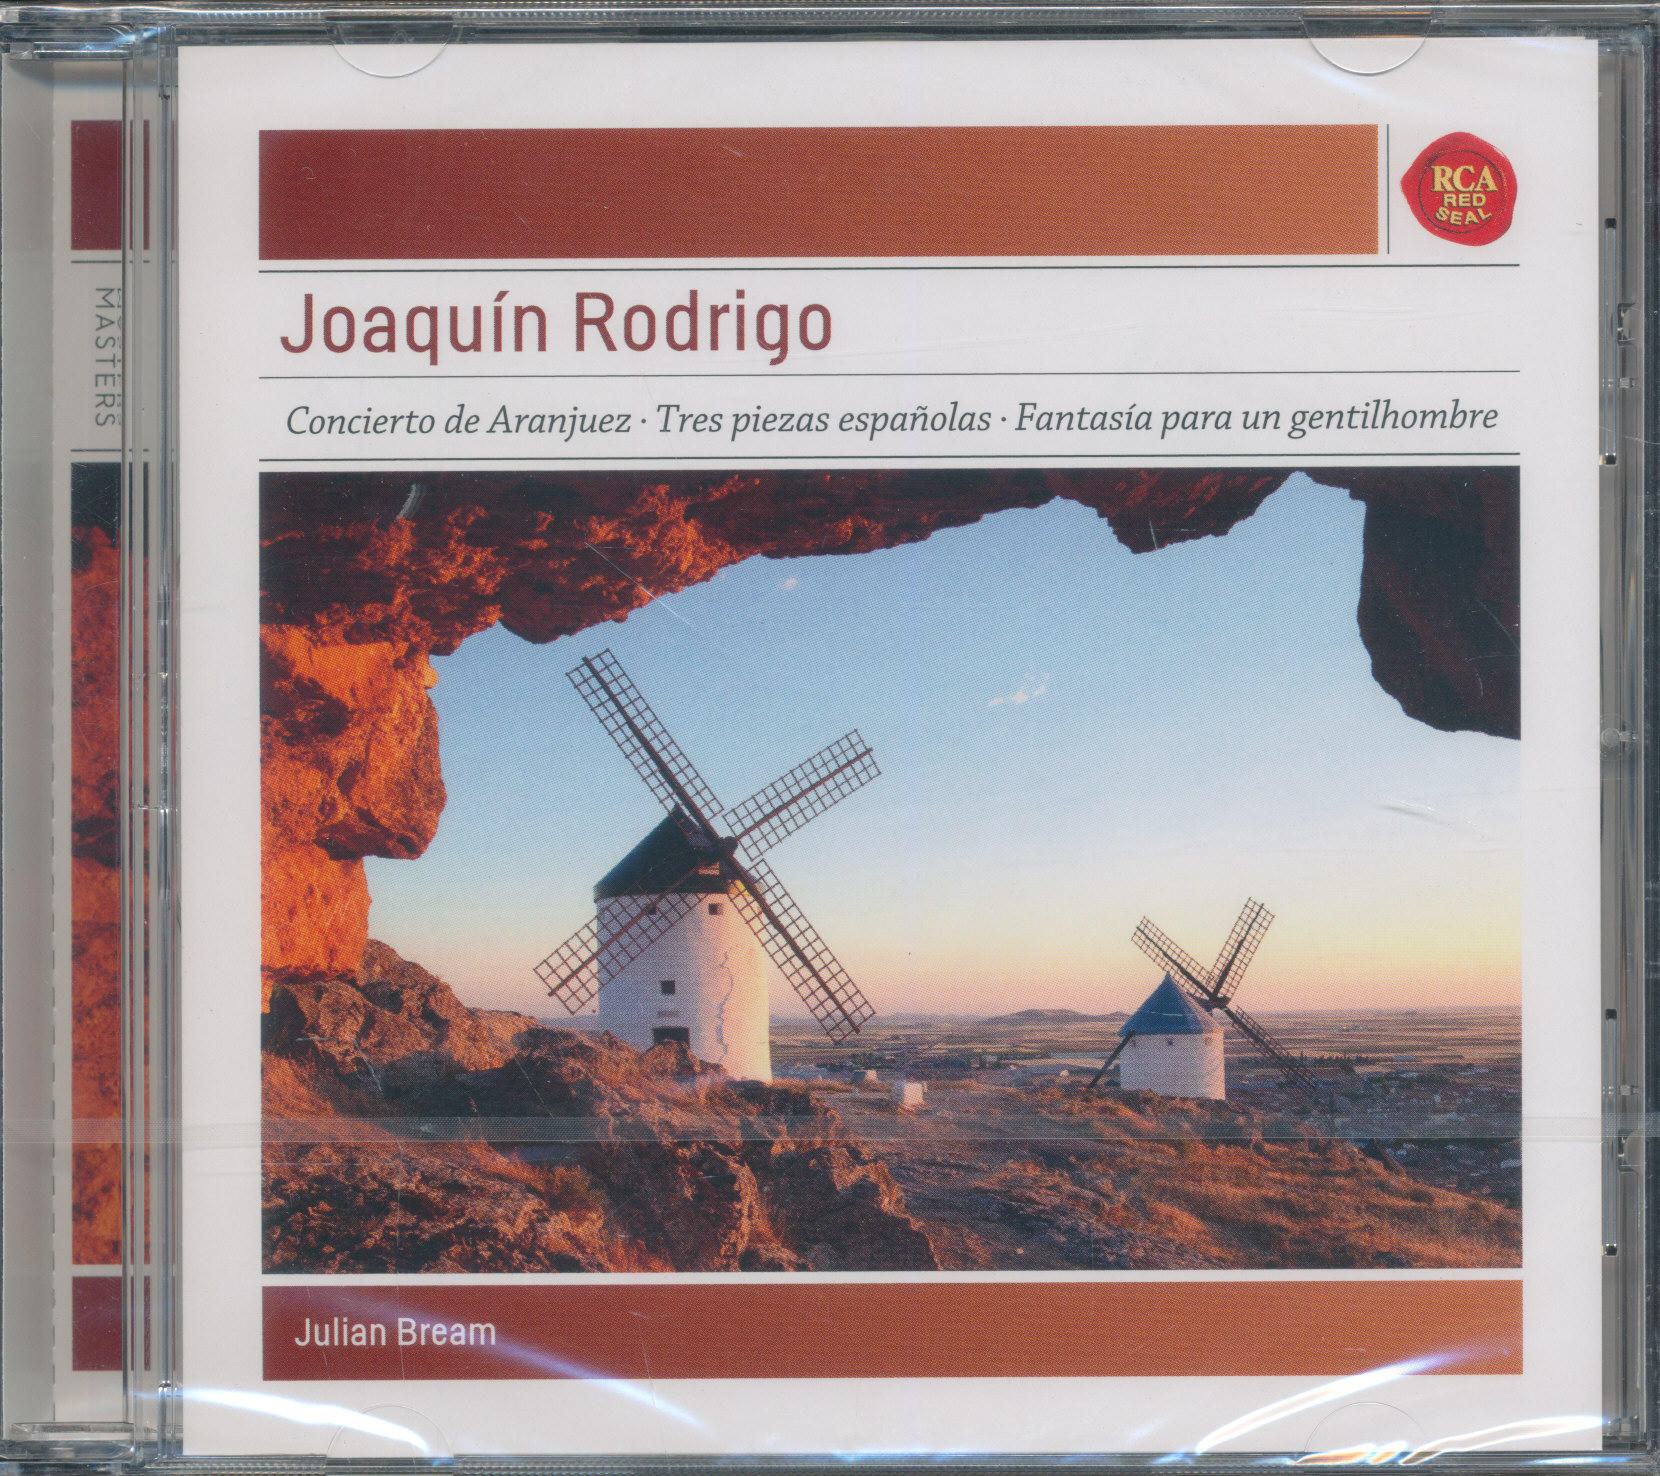 Tres piezas españolas from Joaquín Rodrigo